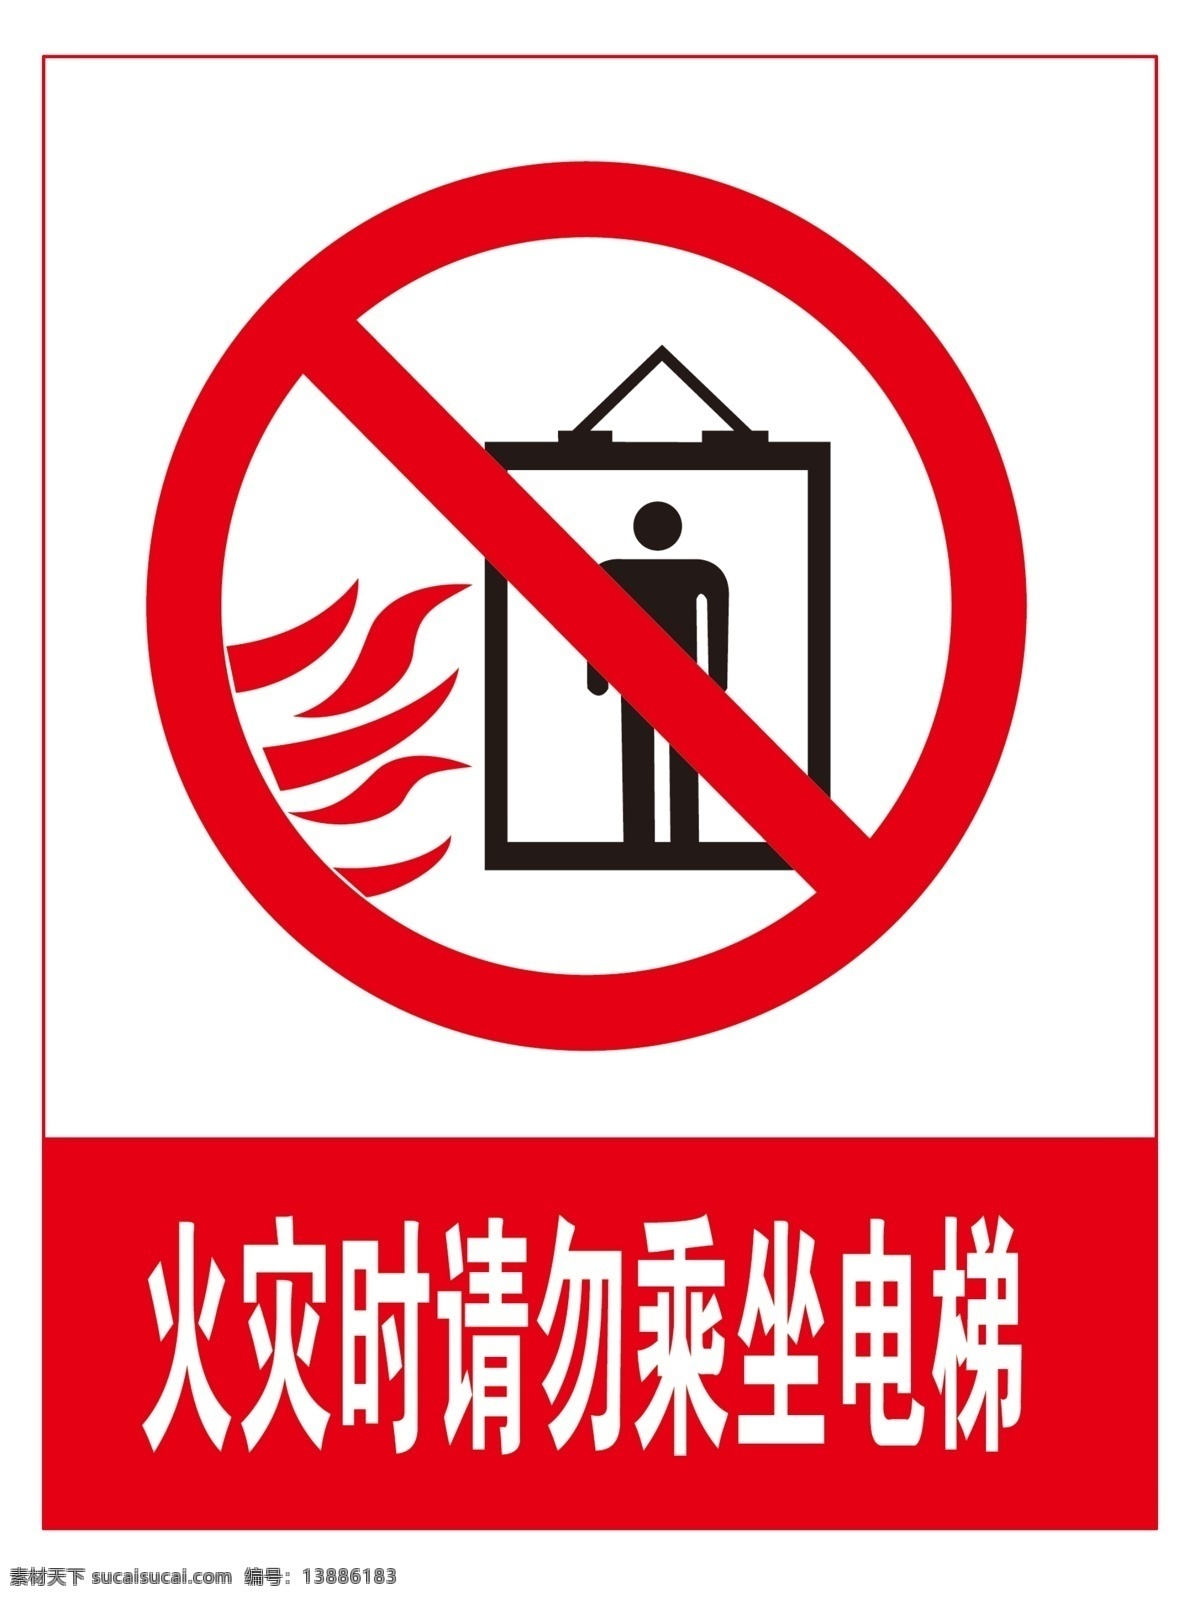 火灾 时 请勿 乘坐 电梯 矢量标识素材 标识素材 警示 公共标识火灾 警告标语 标志图标 公共标识标志